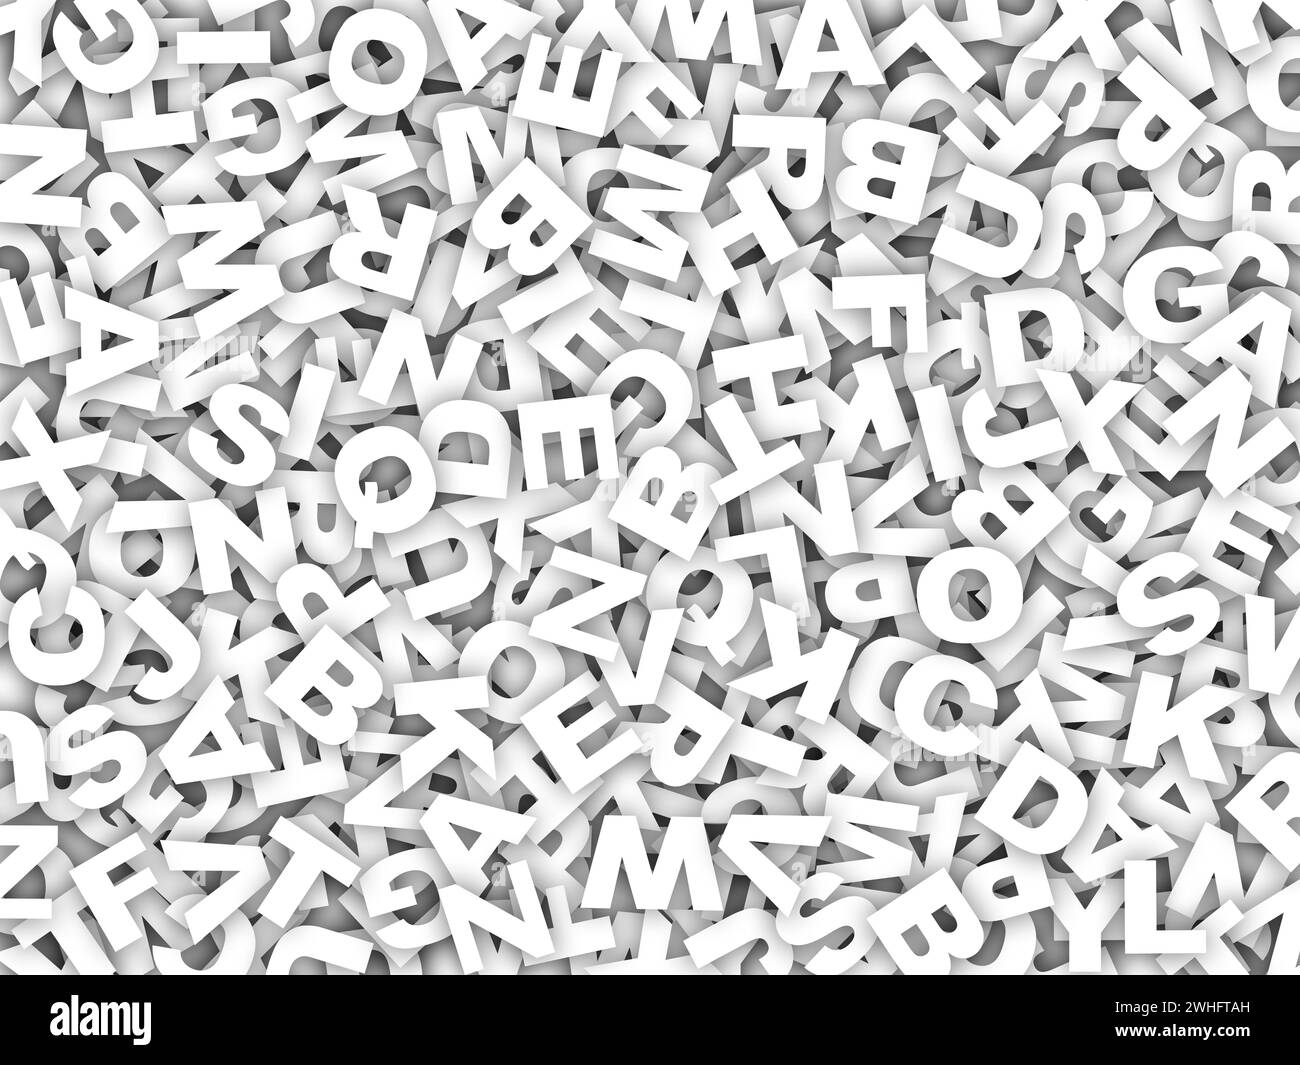 Viele Großbuchstaben sind verwechselt Stockfoto